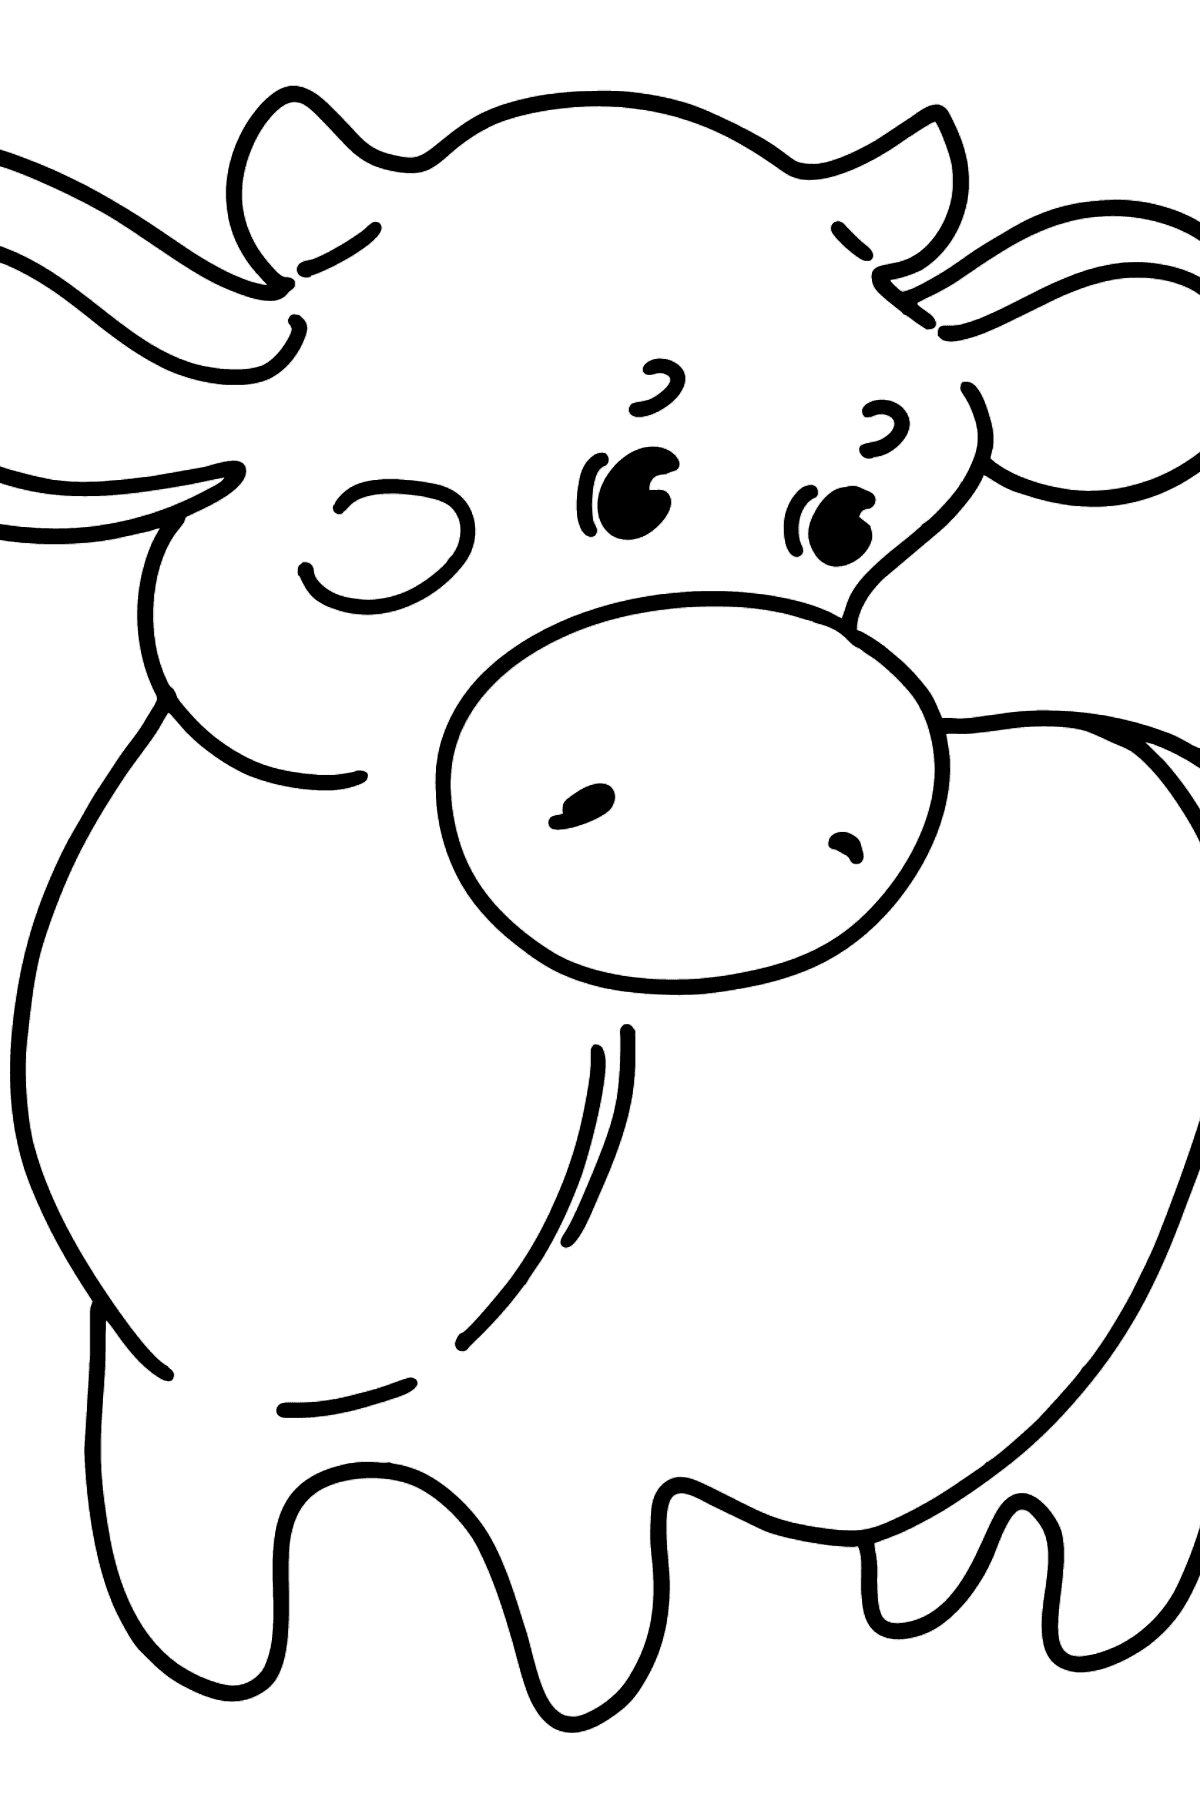 Disegno di vitello da colorare - Disegni da colorare per bambini